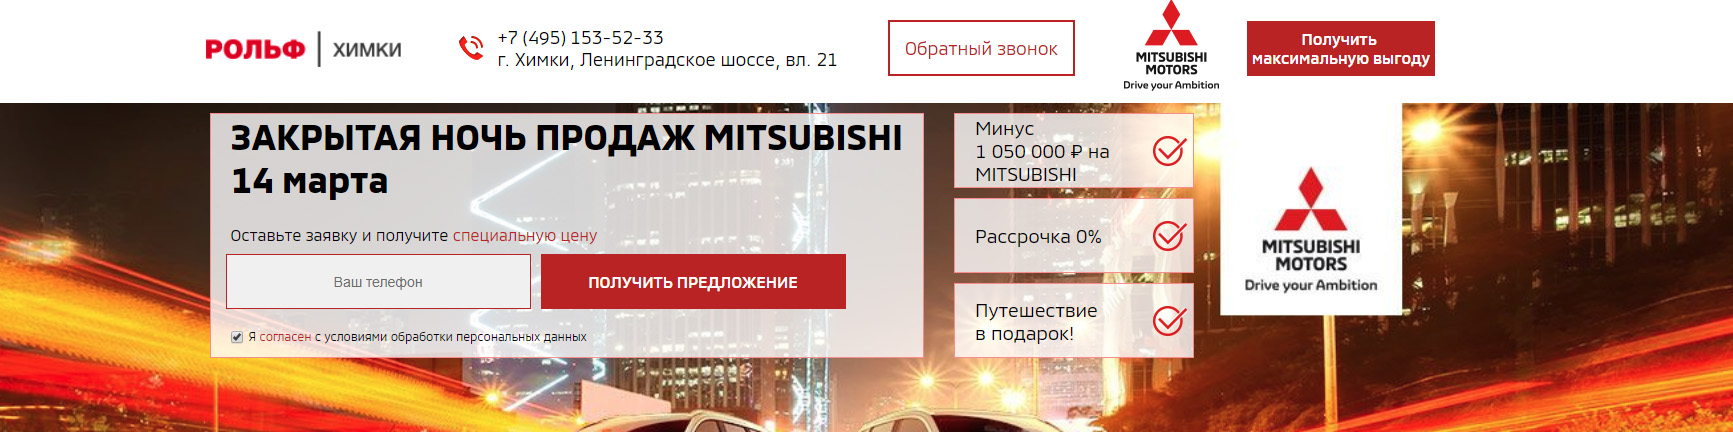 Запуск контекстной рекламы в Яндекс.Директе и Google Ads для автодилера Mitsubishi «Арконт» - рекомендации по сайту, преимущества